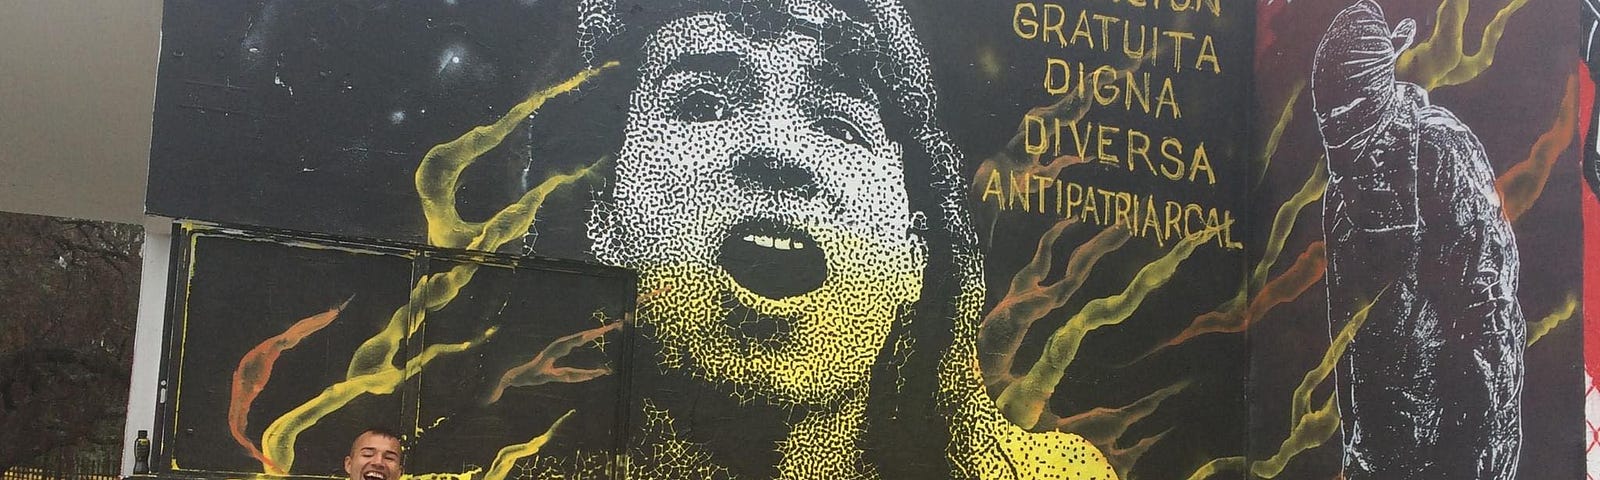 Una fotografía de Ammarantha frente a su propio mural en la Universidad Nacional de Colombia. Además de su rostro, el mural tiene una frase que dice “educación gratuita, diversa y antipatriarcal”.